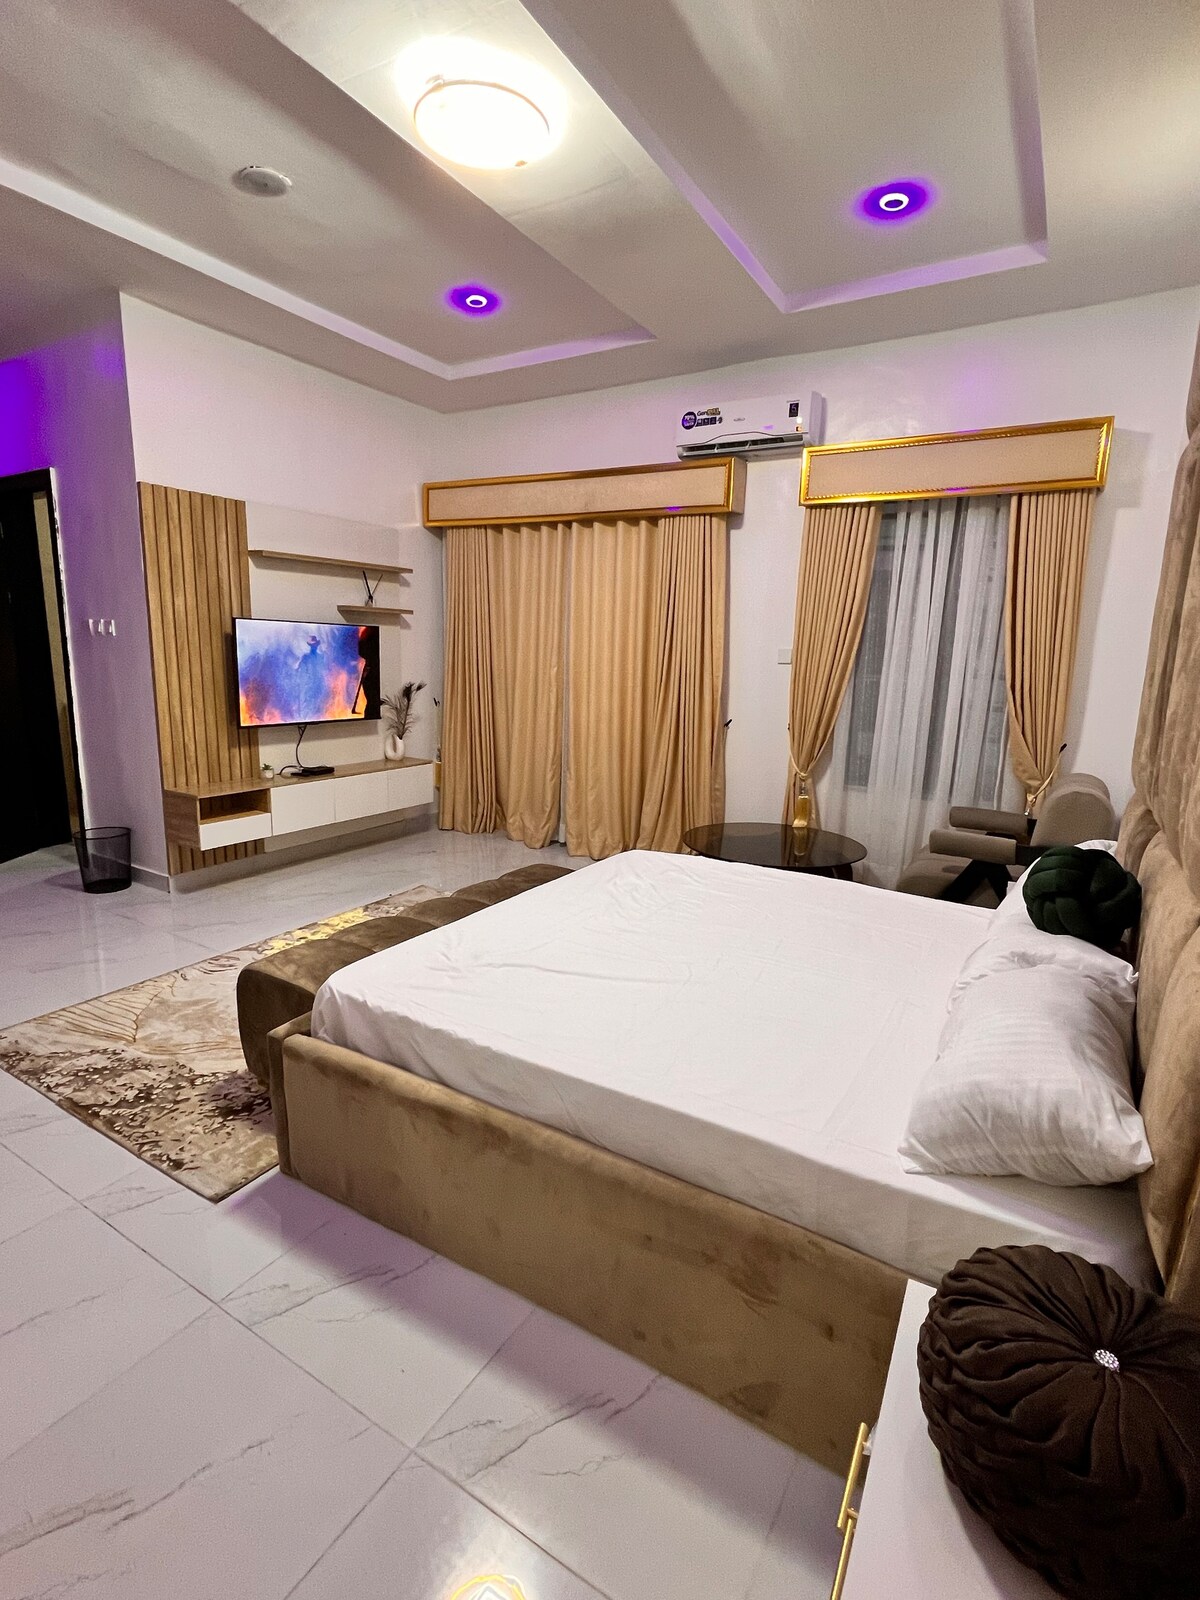 4 bedroom luxury/ comfy duplex en-suite